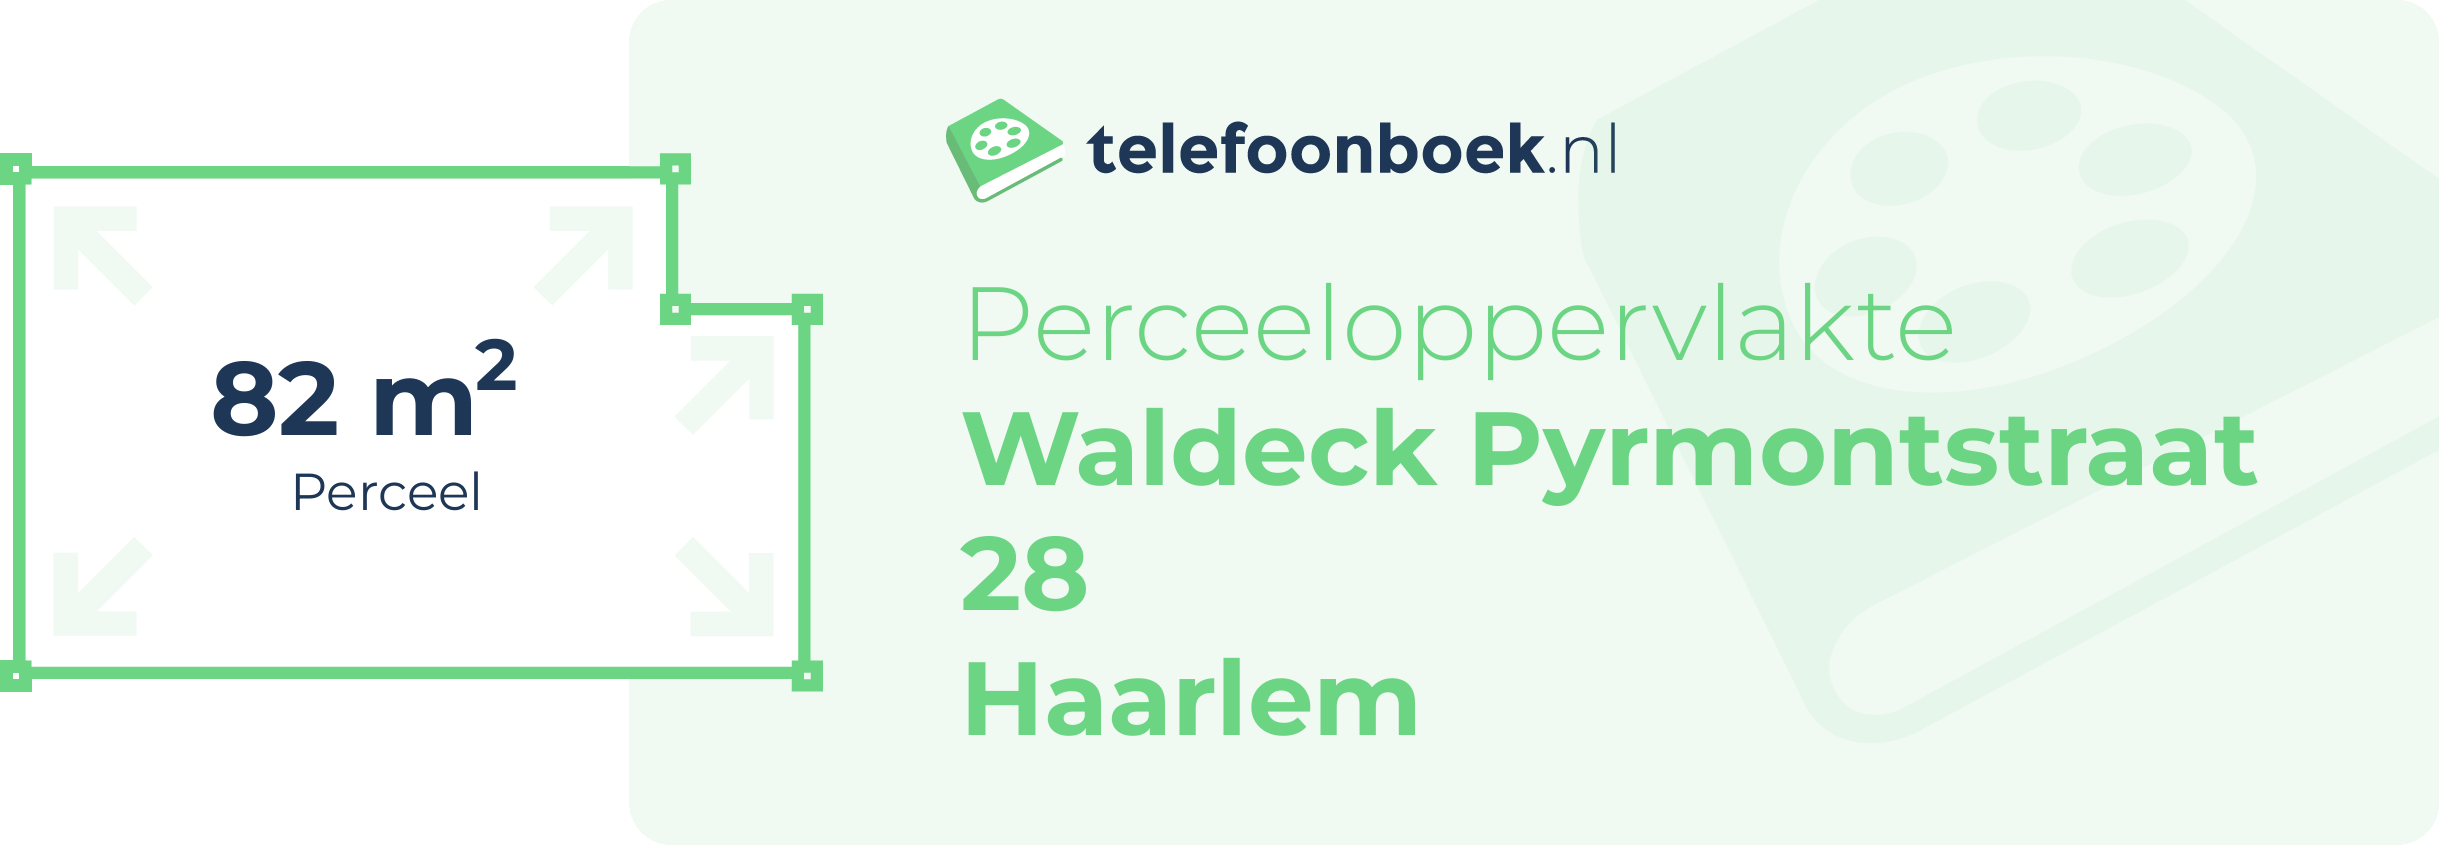 Perceeloppervlakte Waldeck Pyrmontstraat 28 Haarlem